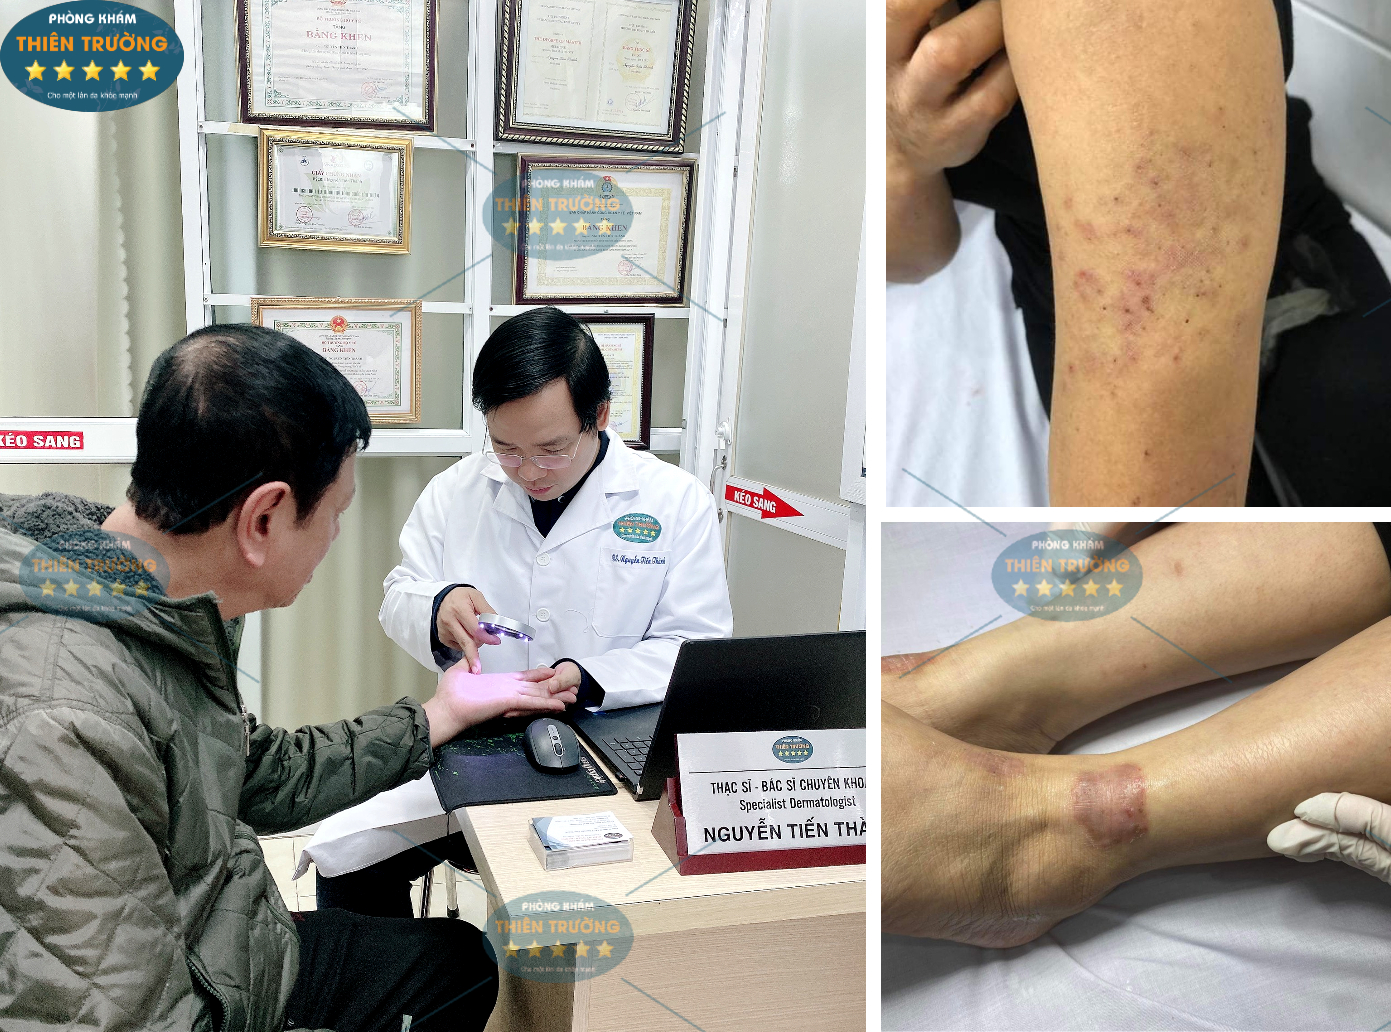 Hình ảnh: Thạc sĩ- Bác sĩ chuyên khoa II Nguyễn Tiến Thành đang khám da cho bệnh nhân.